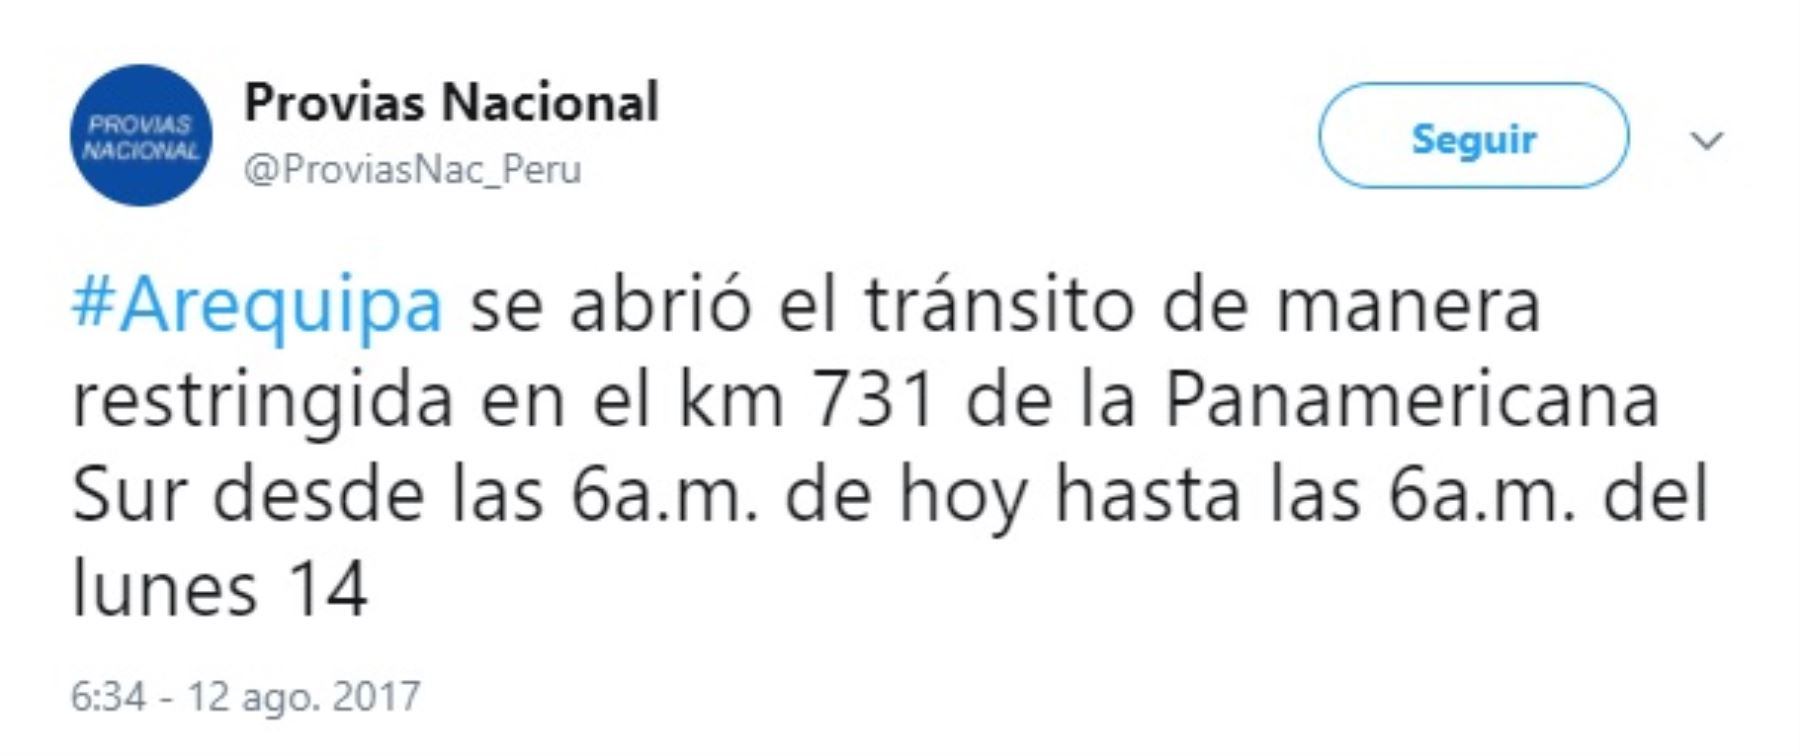 El Ministerio de Transportes y Comunicaciones, a través de Provías Nacional, informó que hoy se abrió el tránsito de manera restringida en el kilómetro 731 de la Panamericana Sur, desde las 06:00 horas y esta medida continuará hasta las 06:00 del lunes 14 de agosto.